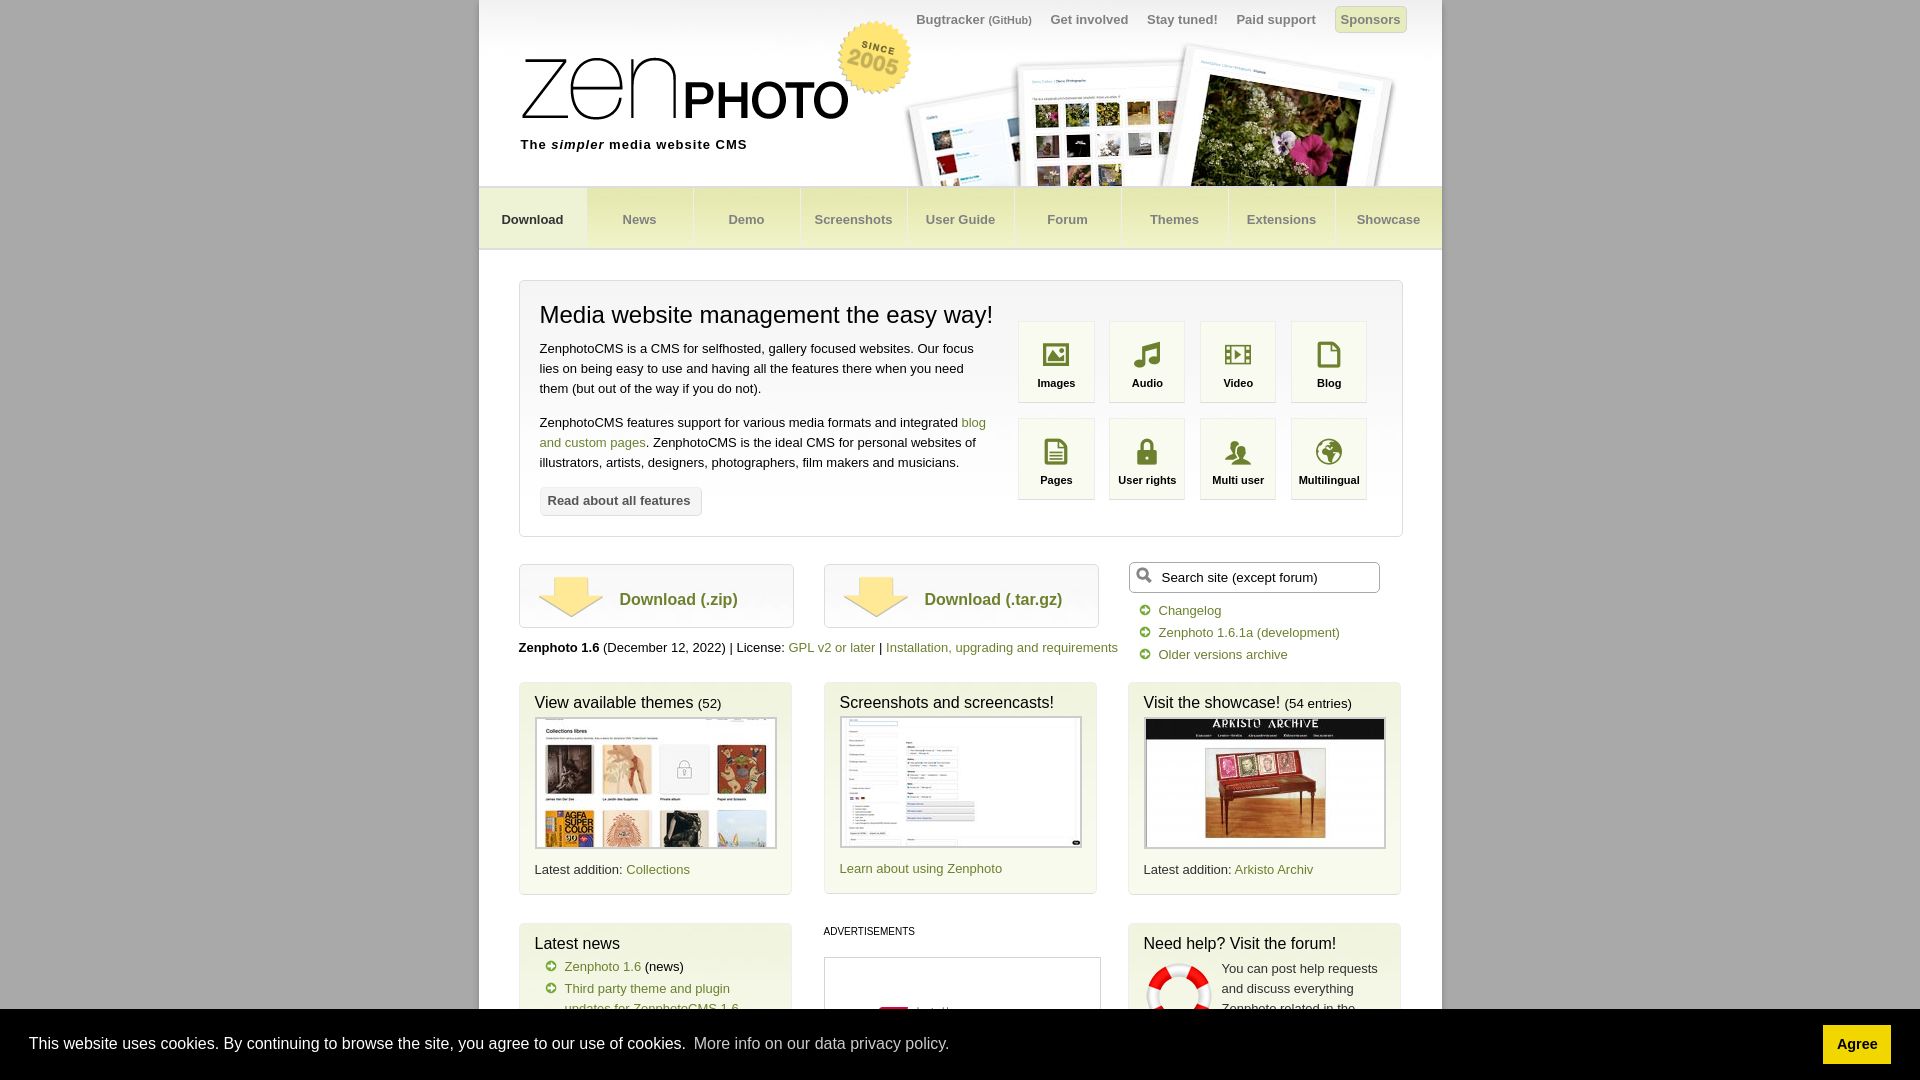 网站状态 zenphoto.org 是  在线的